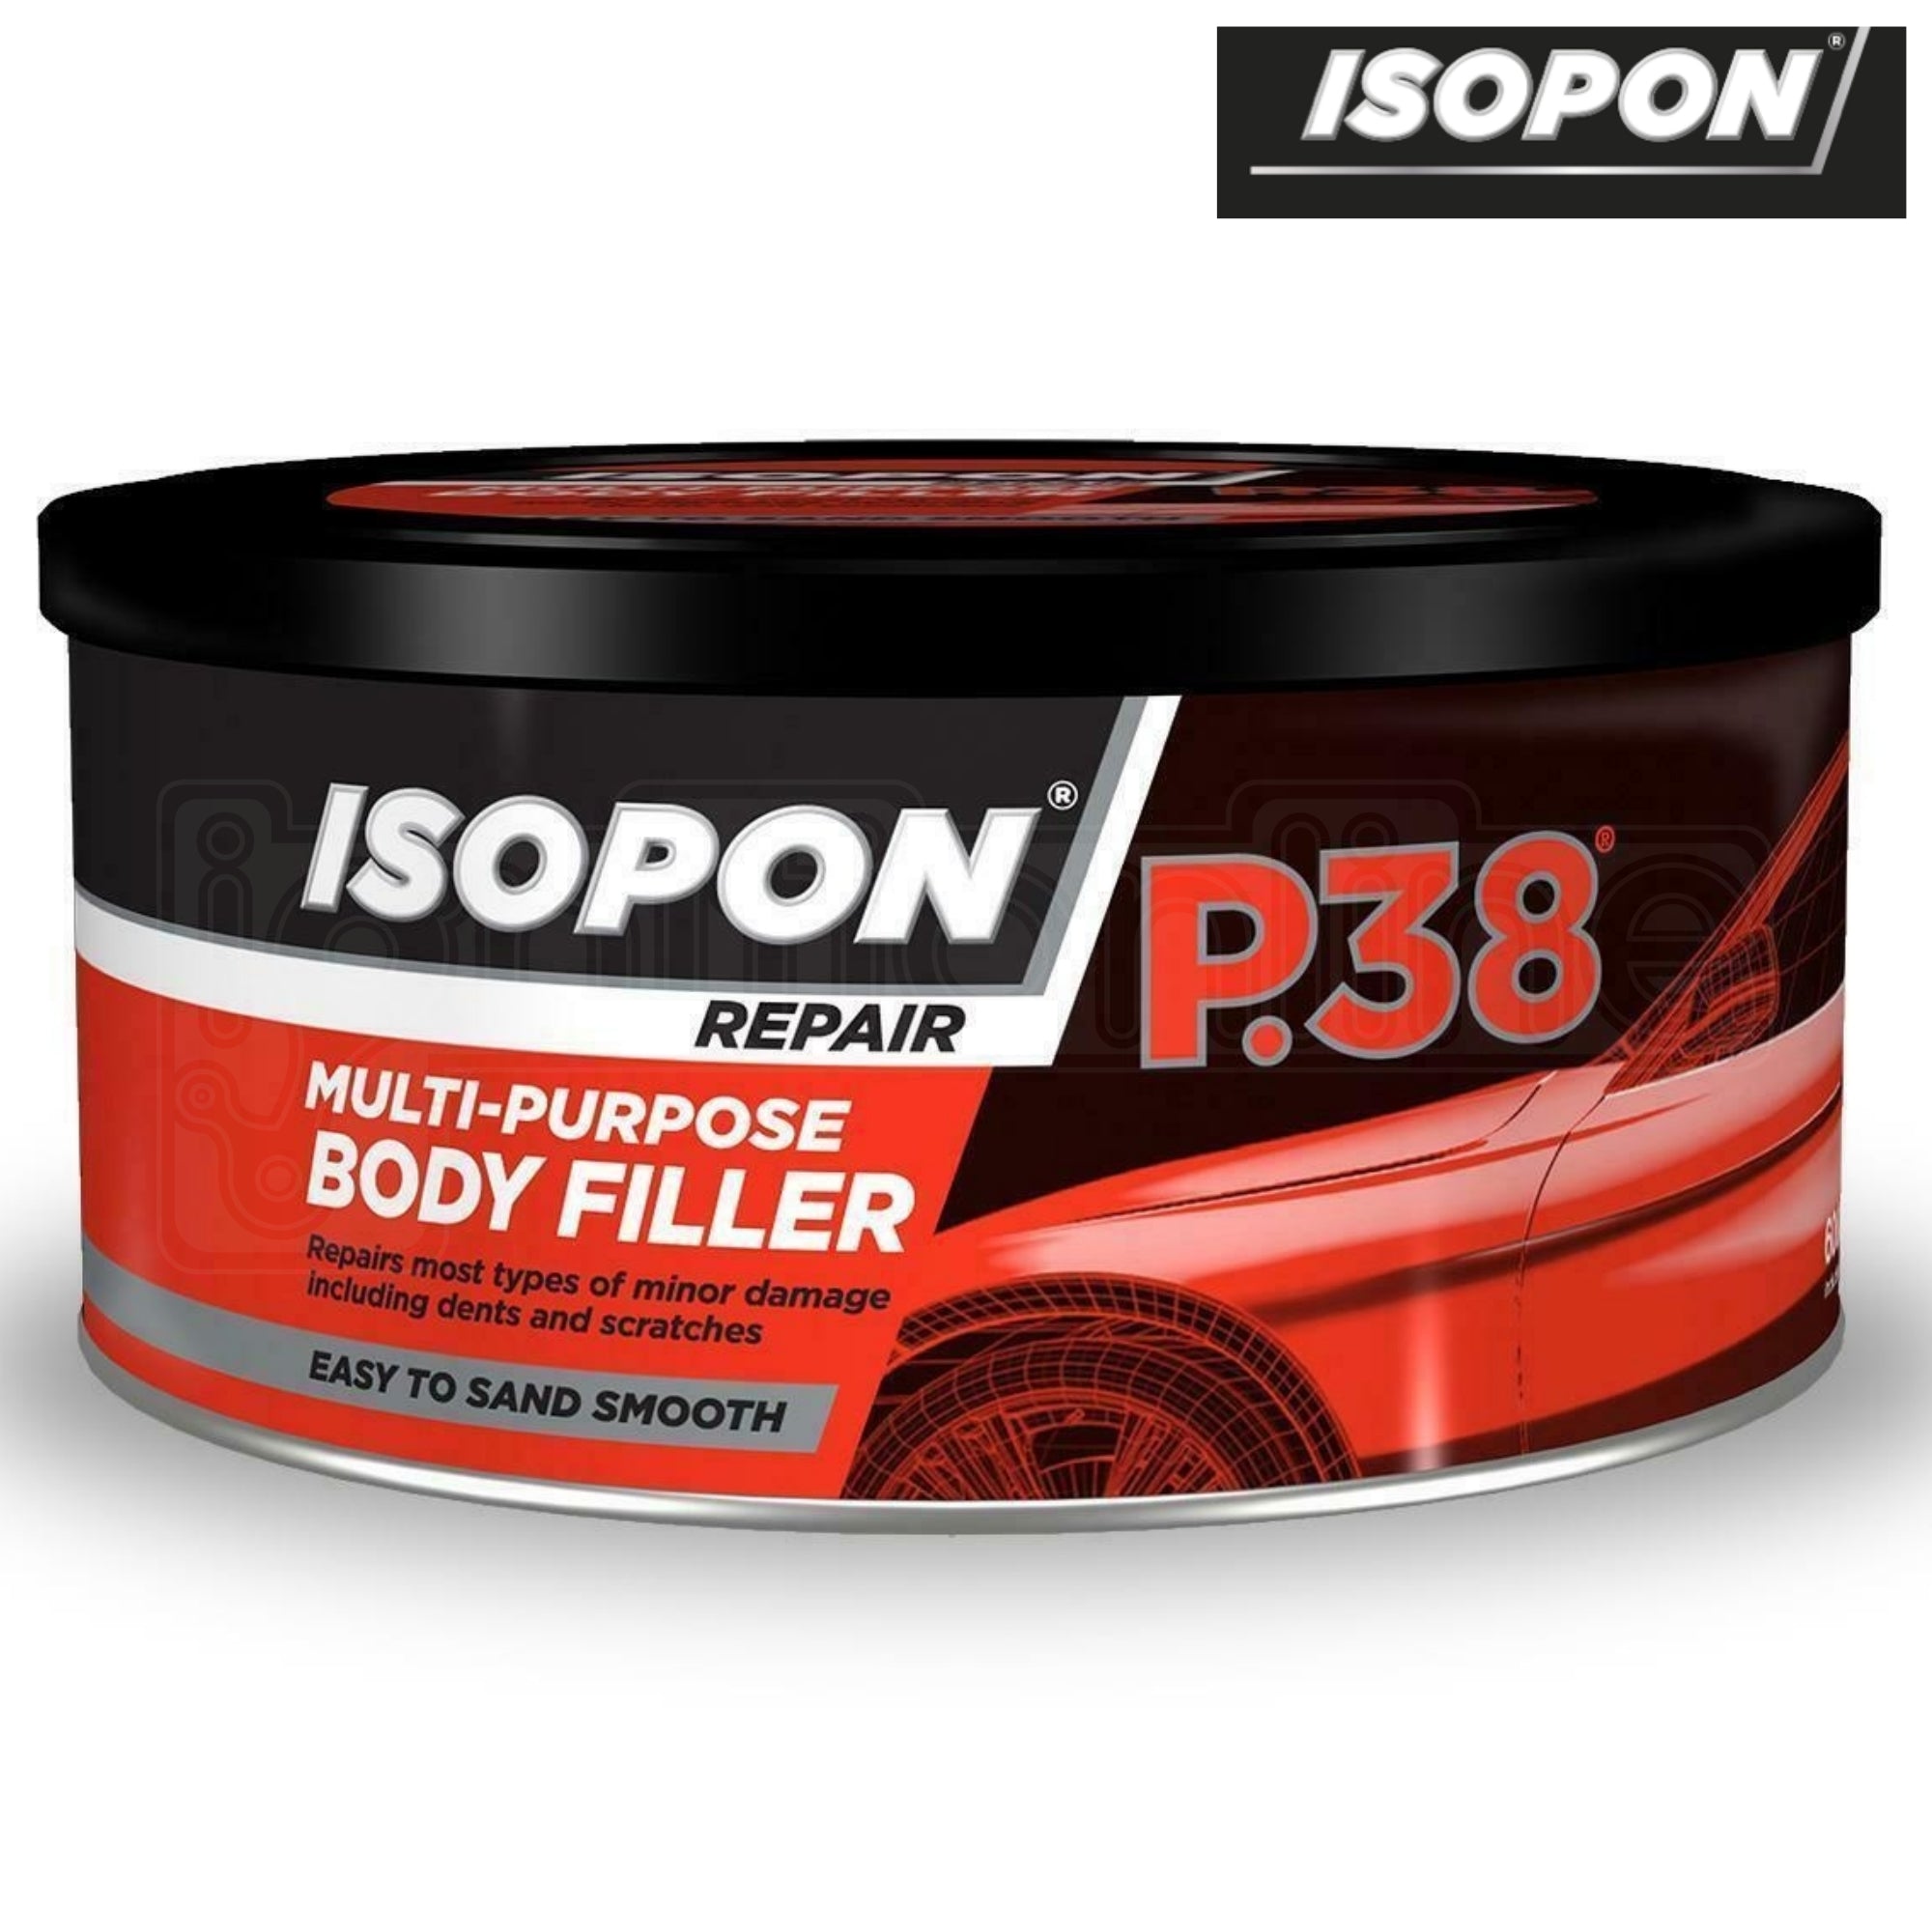 Isopon Repair P.38 Multi-Purpose Body Filler 600ml